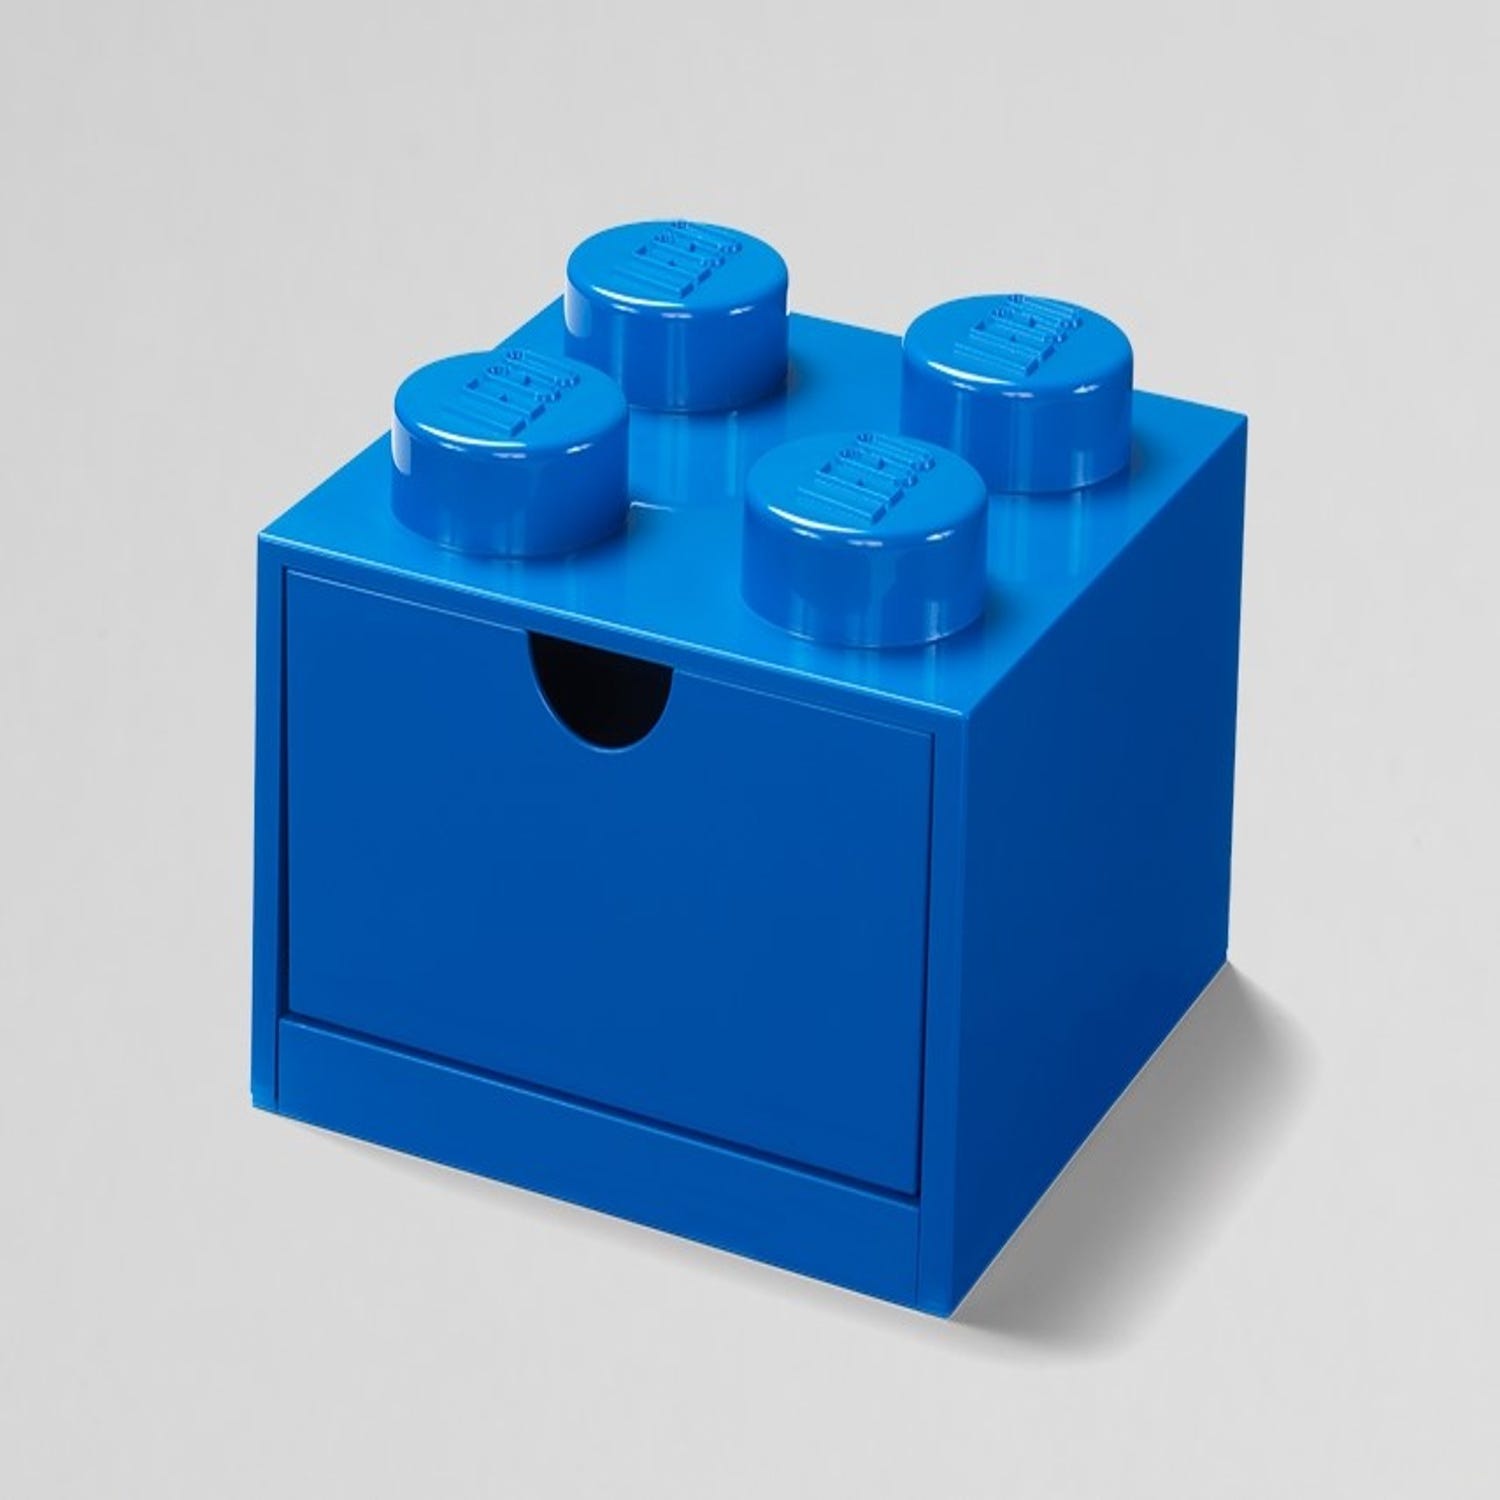 LEGO Organizer Cubes (Discontinued by LEGO)